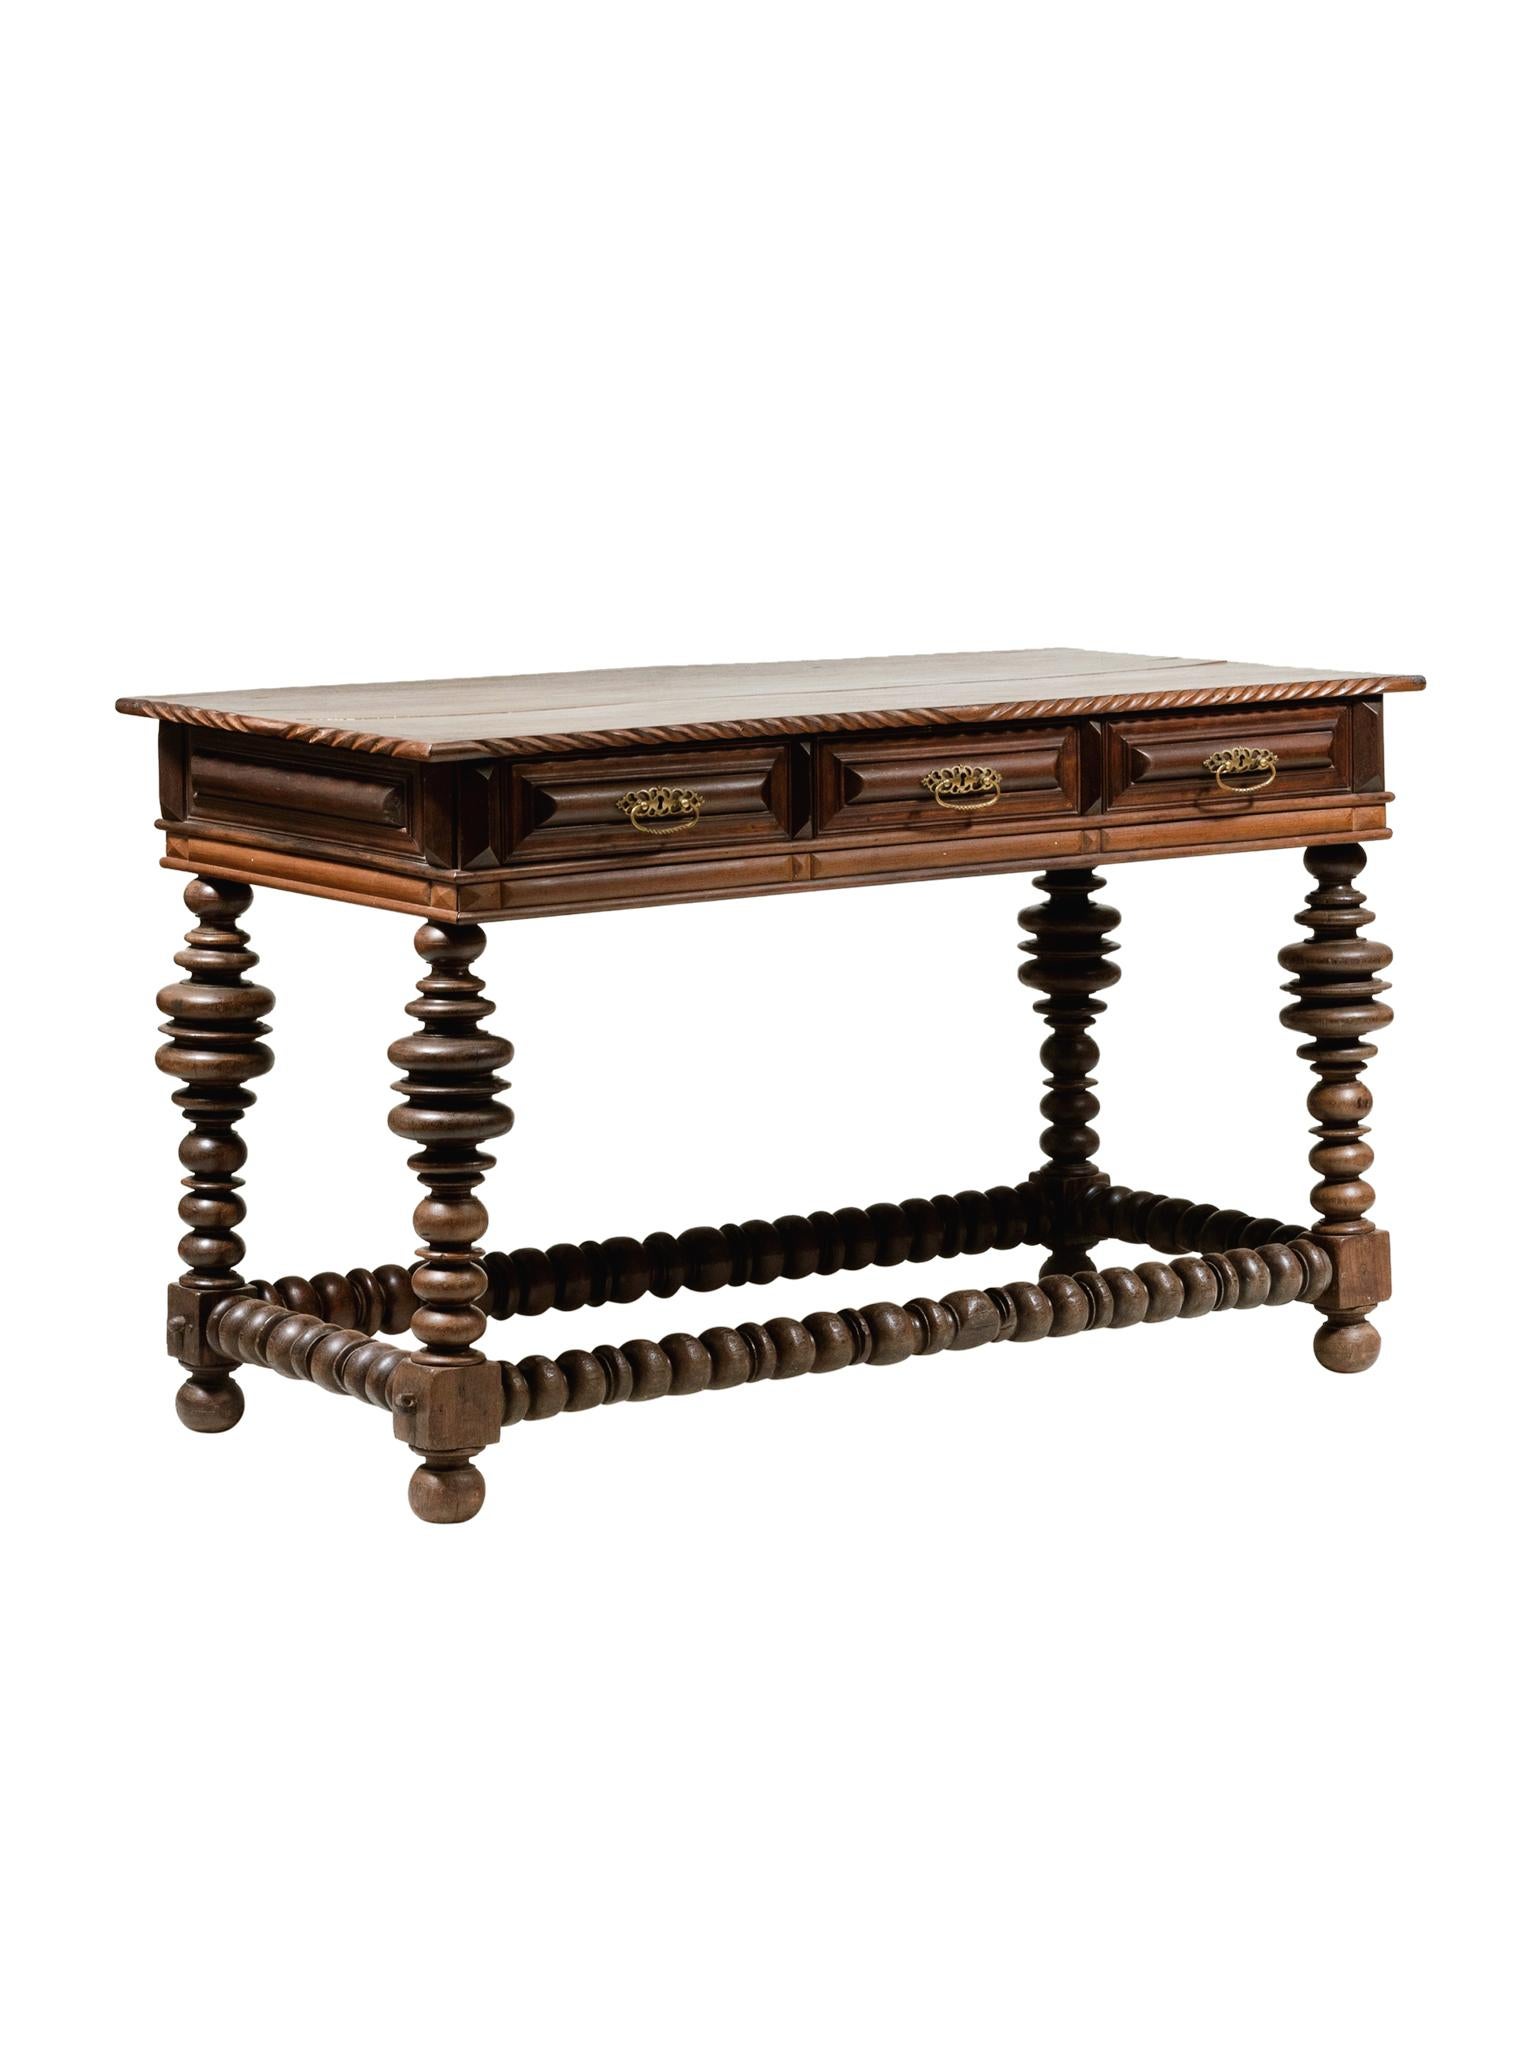 Dieser portugiesische Tisch im Barockstil wurde im 20. Jahrhundert gebaut. Es ist eine Ehe aus antiken Teilen. Insgesamt besteht der Tisch aus Palisanderholz mit einem schönen, warmen Ton. Es gibt 3 Schubladenfächer mit Messinggriffen. Ein